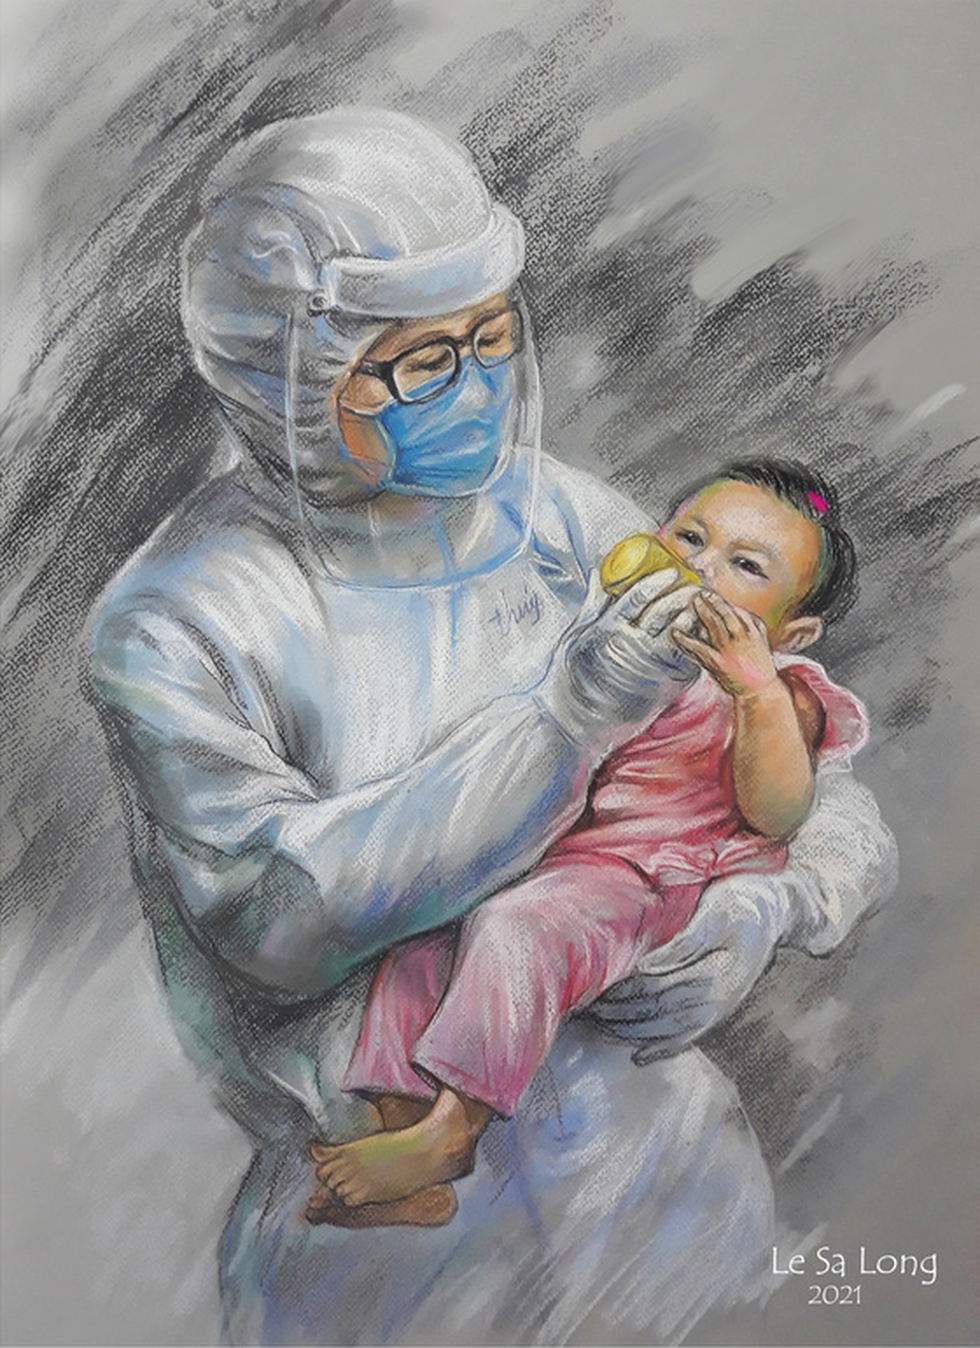 Tác phẩm 'Dòng sữa ngọt ngào…' vẽ từ bức ảnh nữ bác sĩ Phạm Thị Thanh Thúy mặc đồ bảo hộ, một tay bế em bé F0, một tay cho bé bú tại khoa cấp cứu Bệnh viện Trưng Vương TP.HCM.